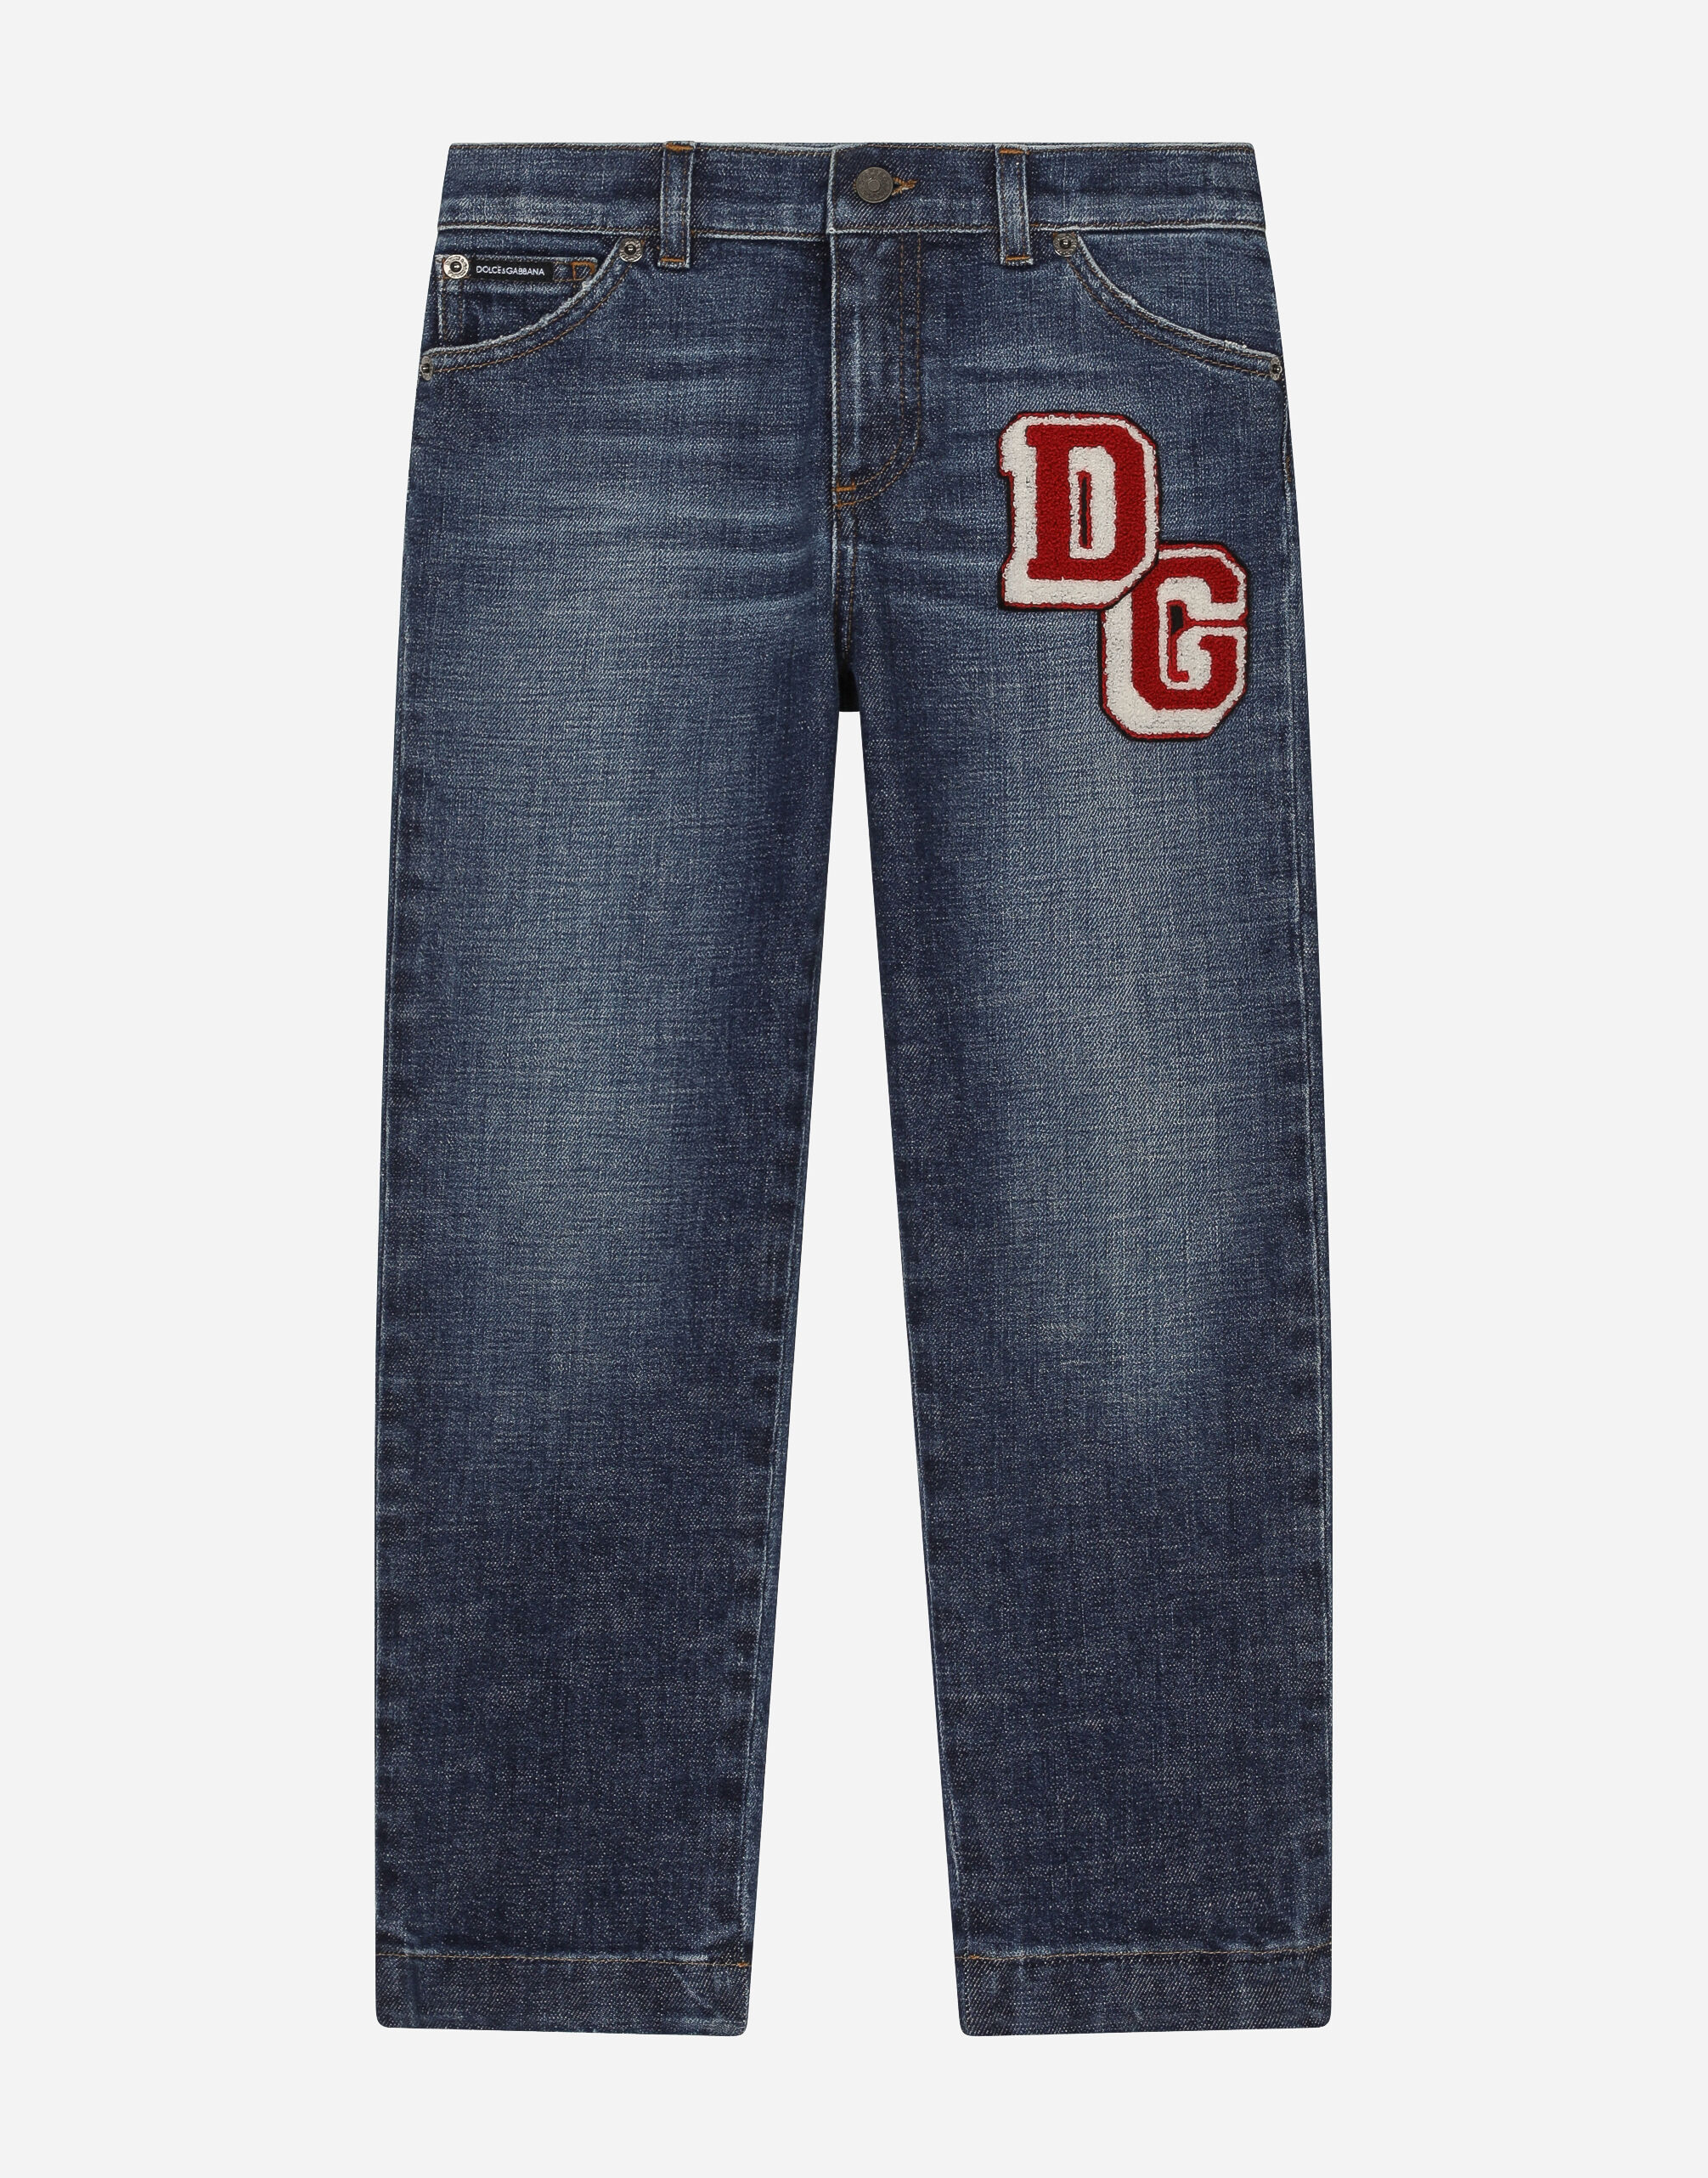 Dolce & Gabbana 5-pocket denim jeans with DG patch Blue L4JQP0G7IJ8